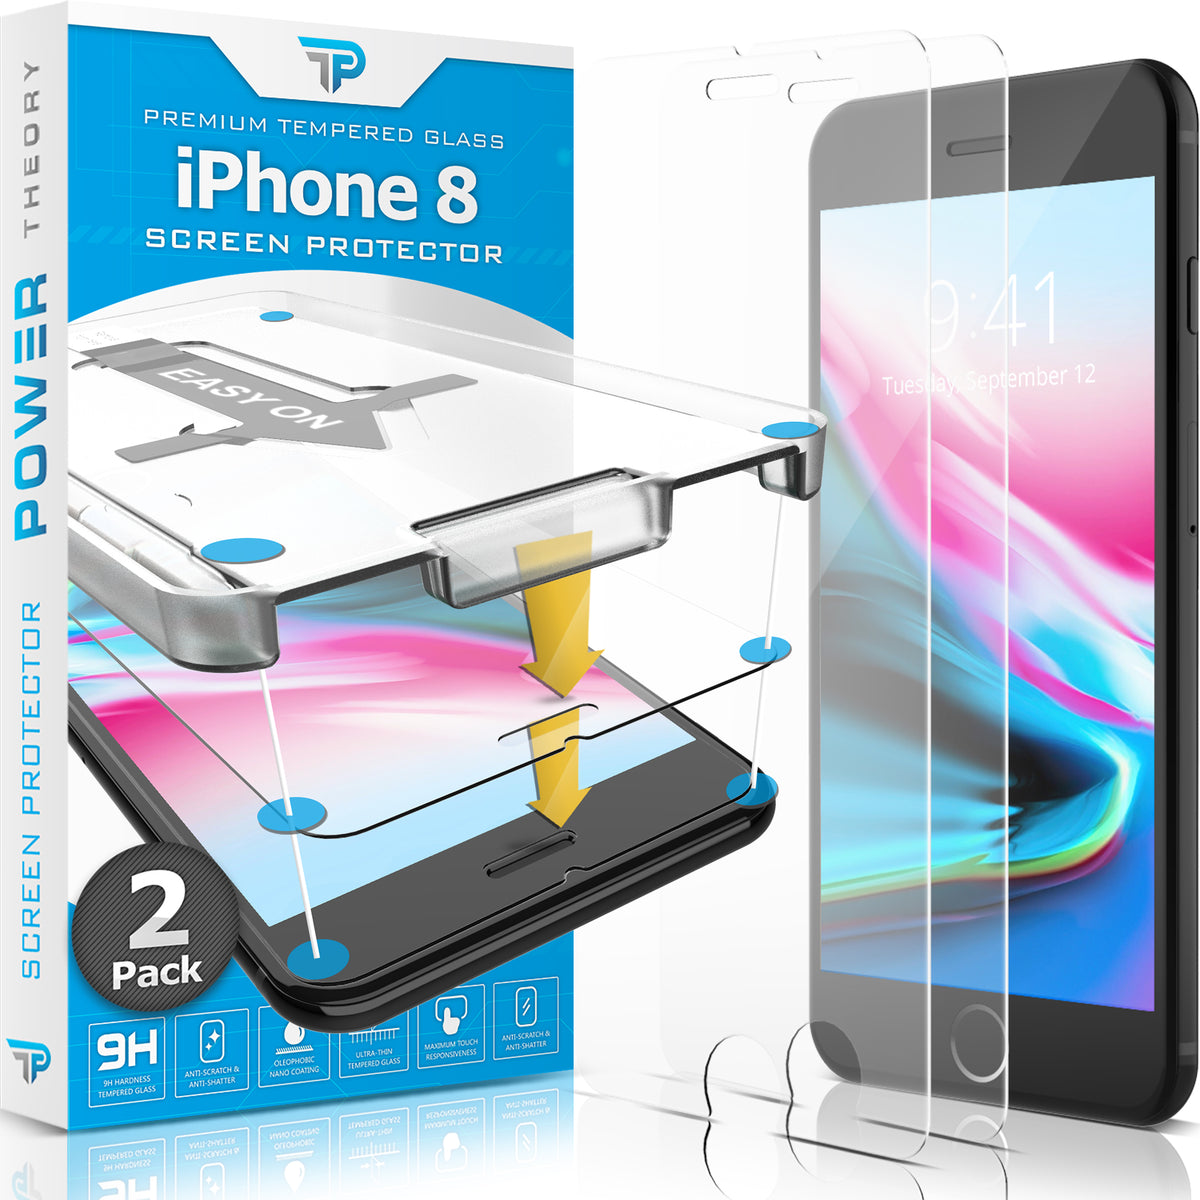 Power Theory Schutzfolie Passend für iPhone 8 (2 Stück) Cover